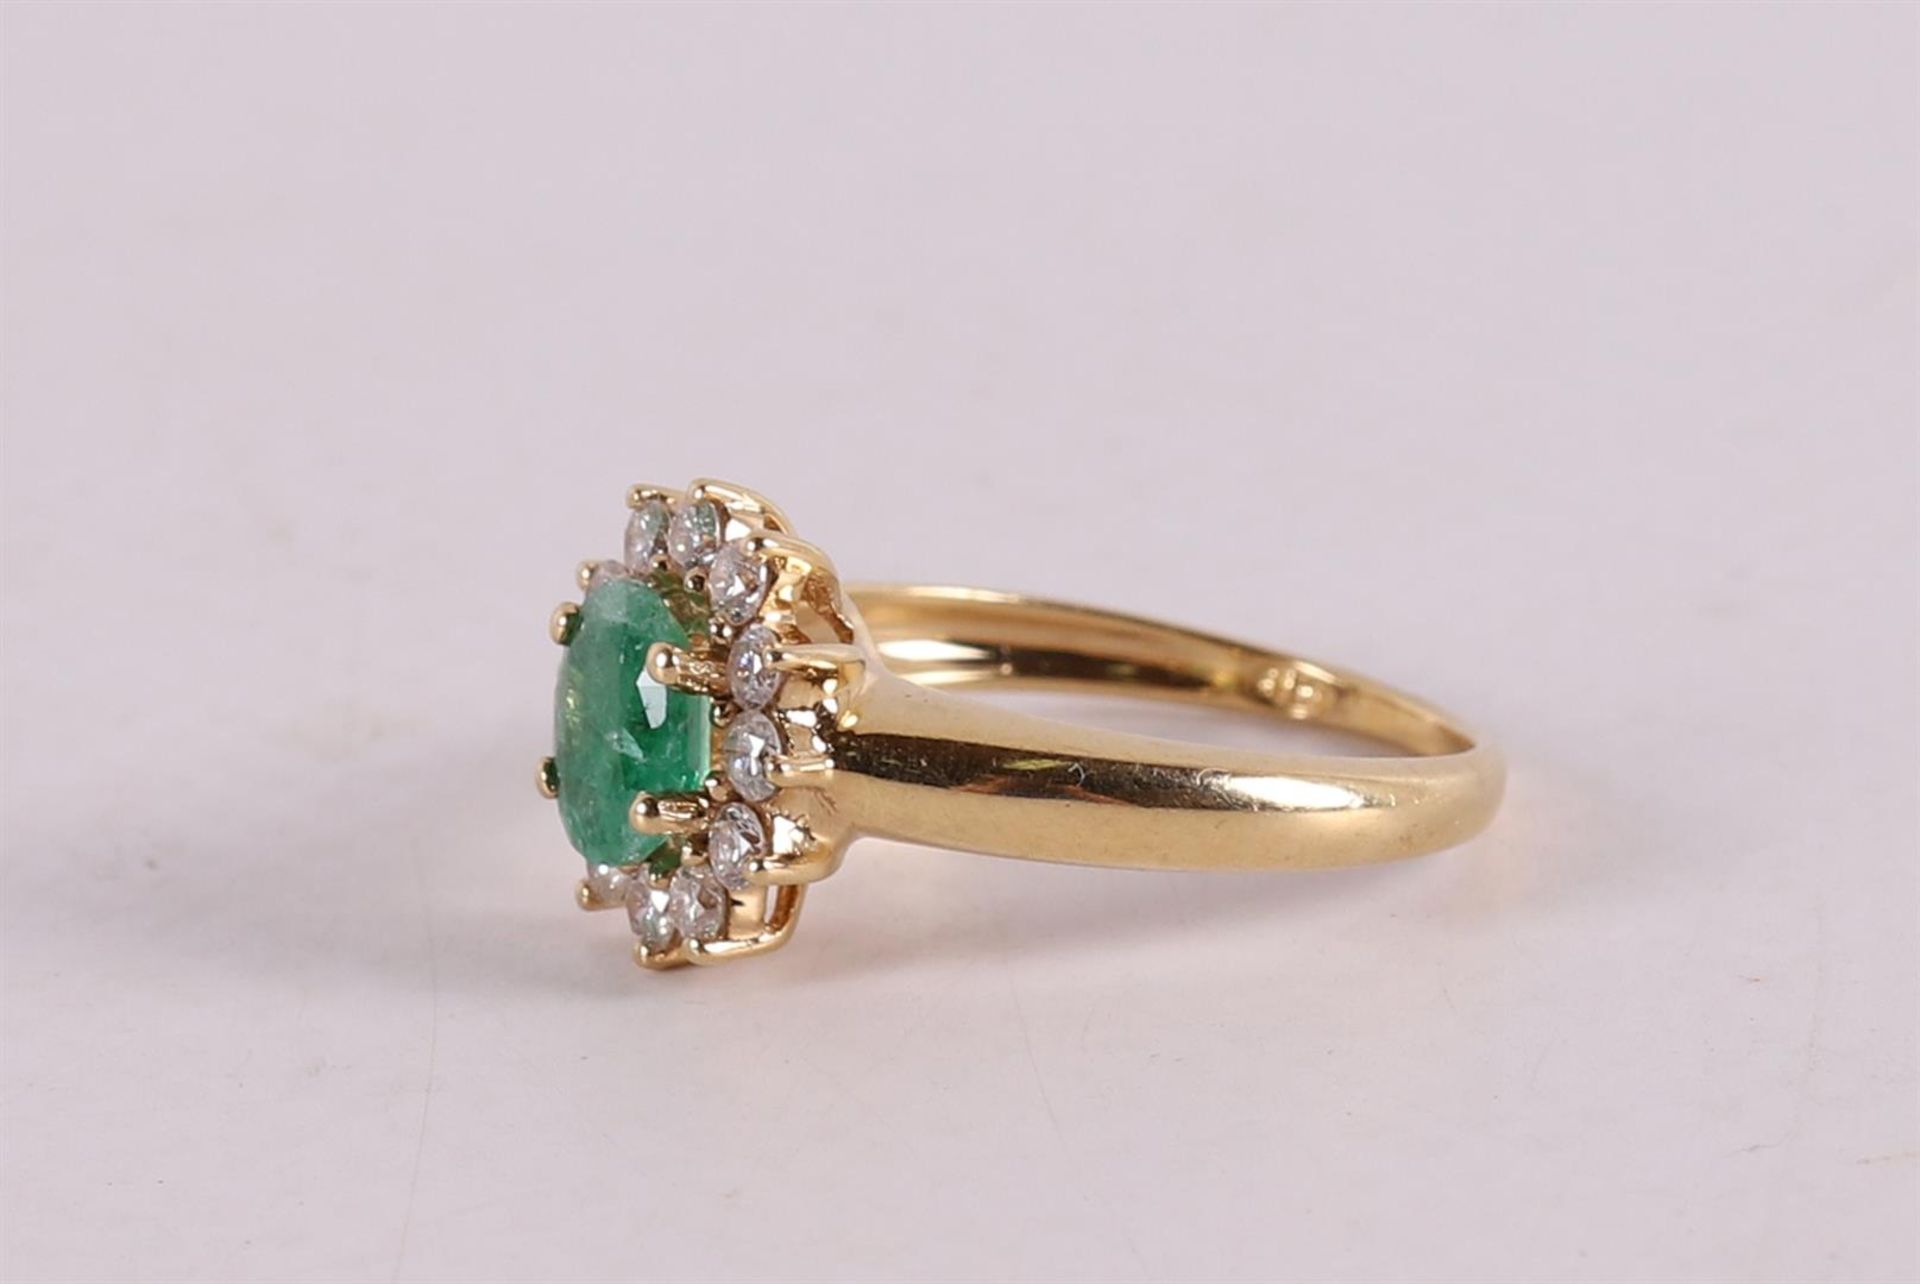 An 18 kt gold ring with an oval facet cut emerald. - Bild 2 aus 2